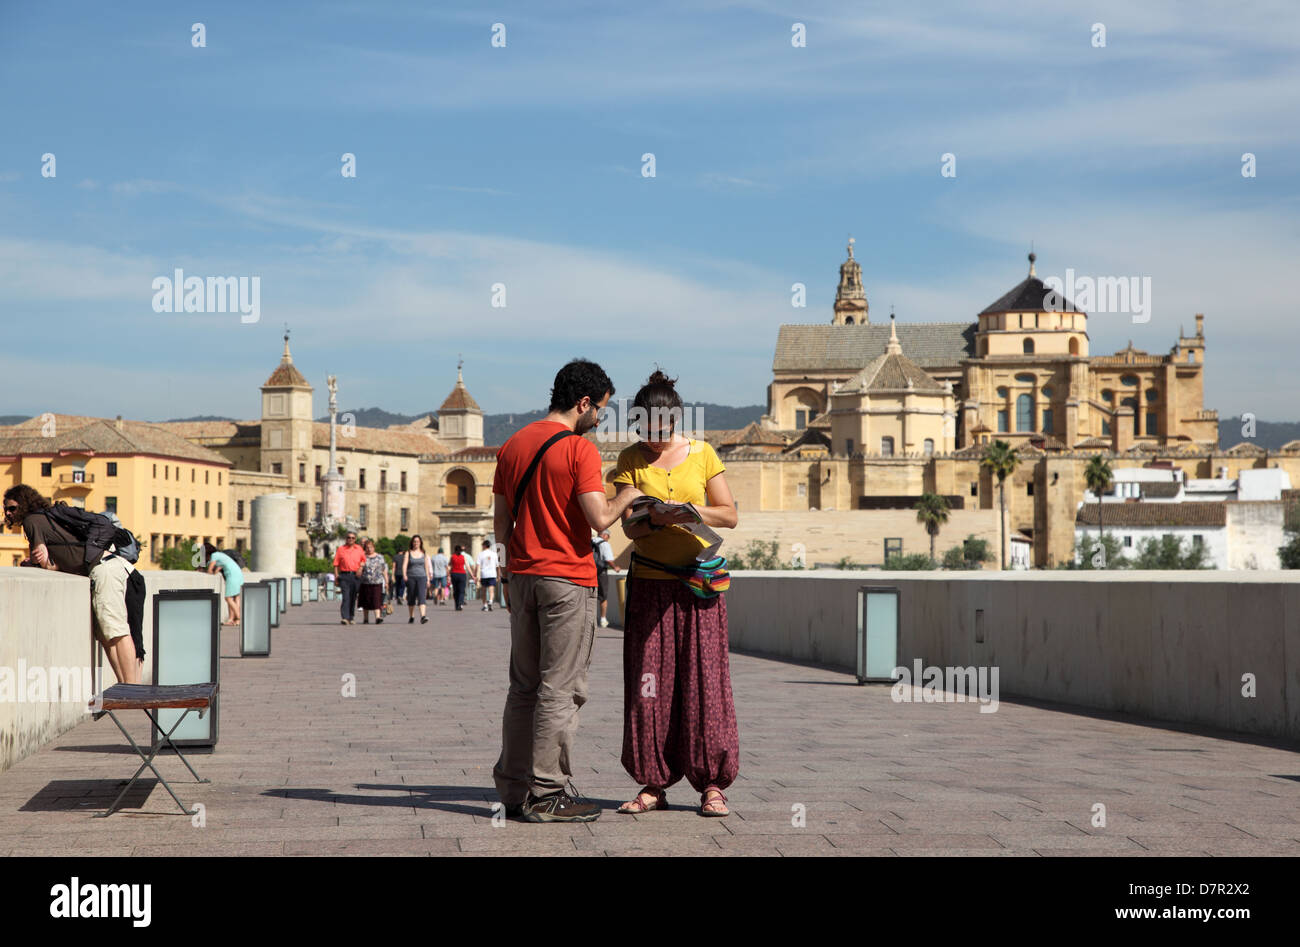 Les touristes sur le pont à Cordoue, Andalousie Espagne Banque D'Images